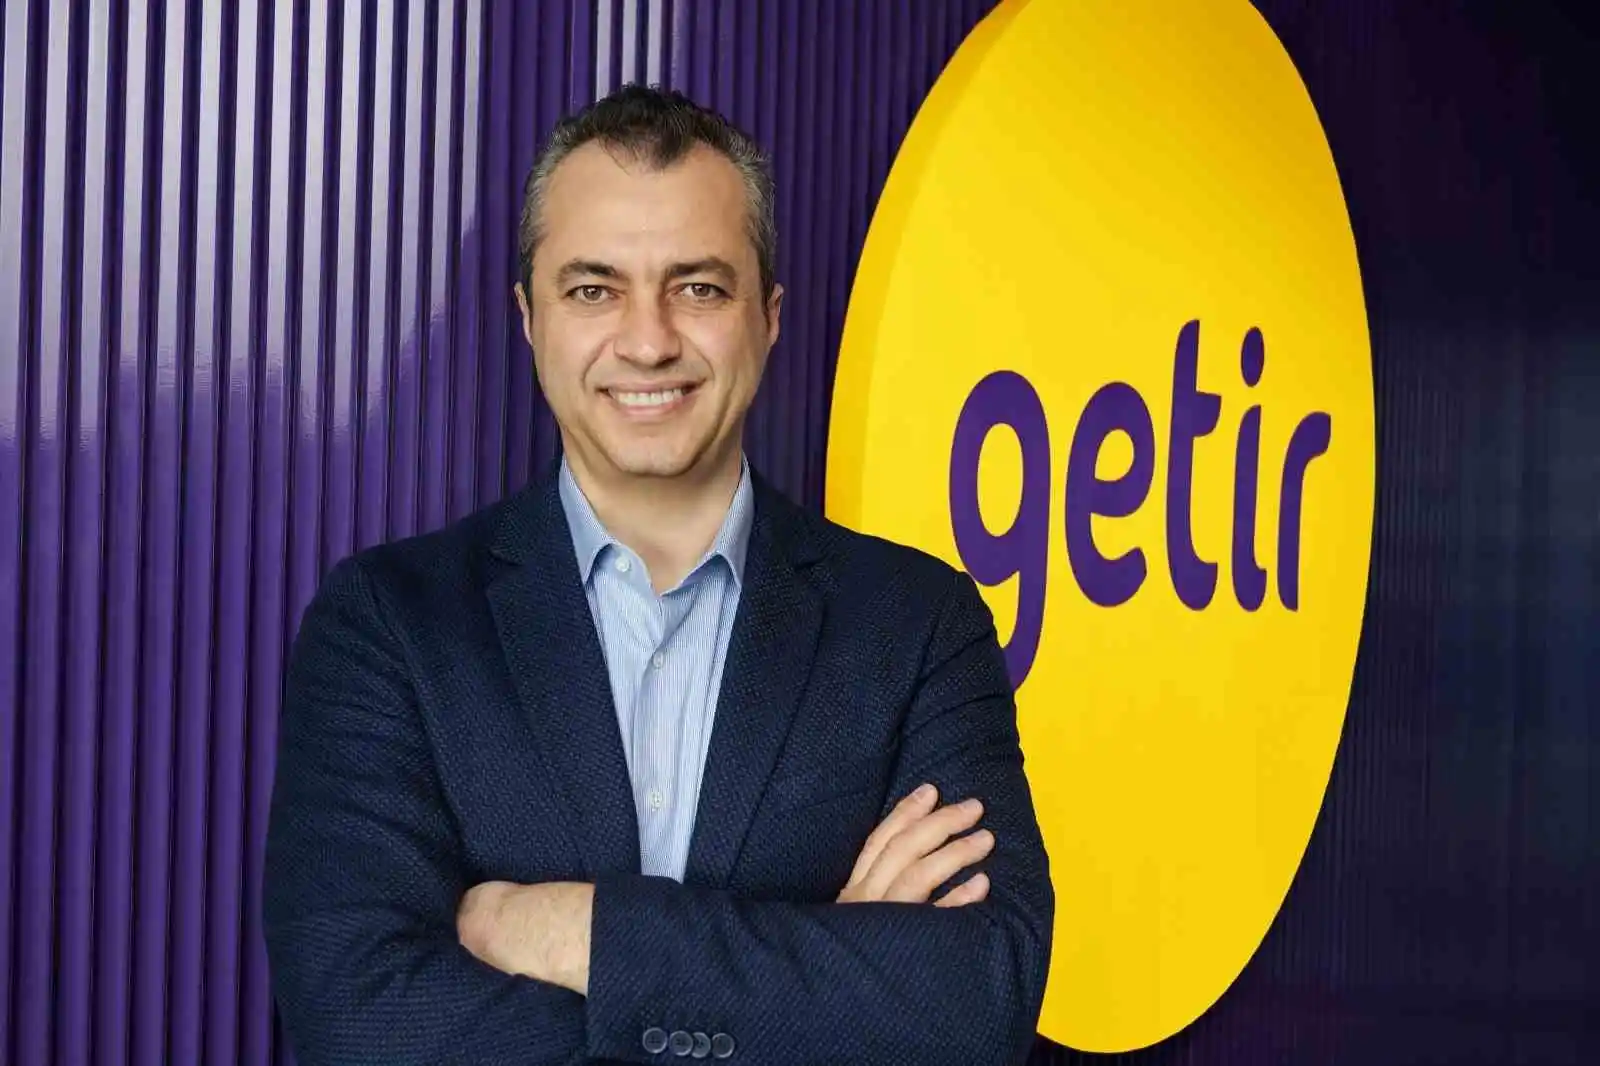 Getir'in su markası Kuzeyden yeni bir sponsorluk adımı attı
